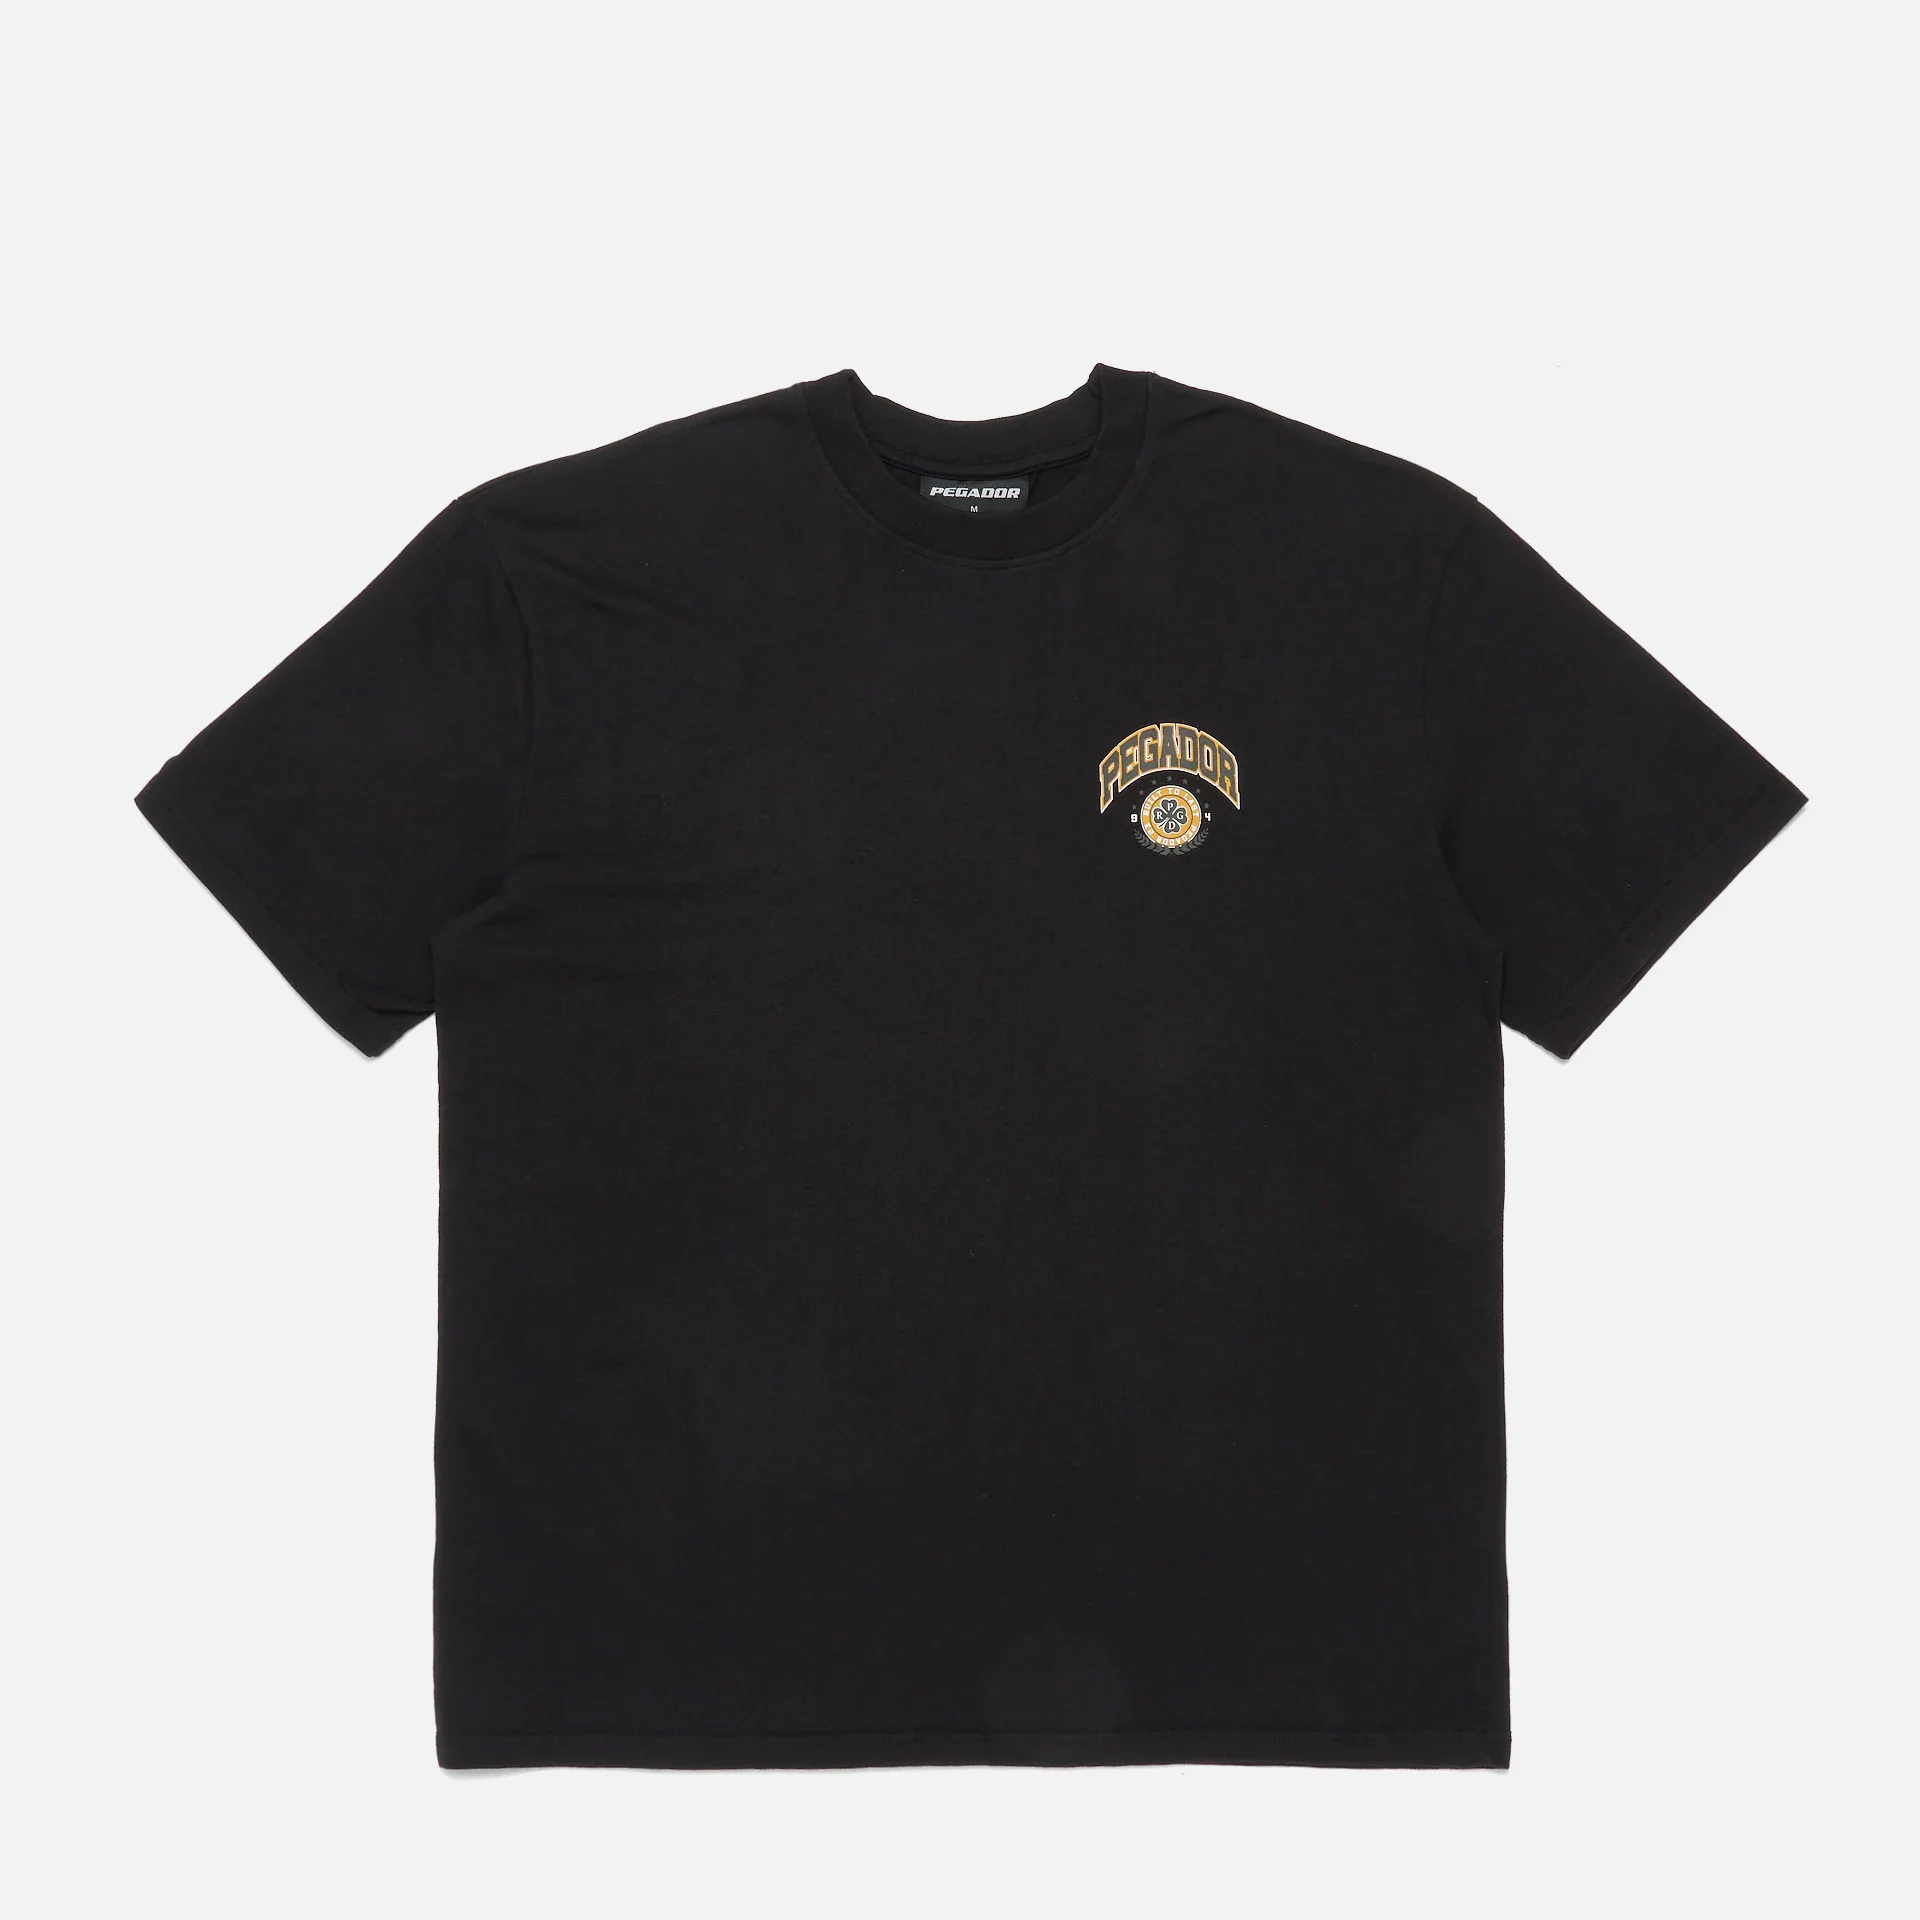 PEGADOR Smith Logo Oversized T-Shirt Vintage Washed Black Onyx